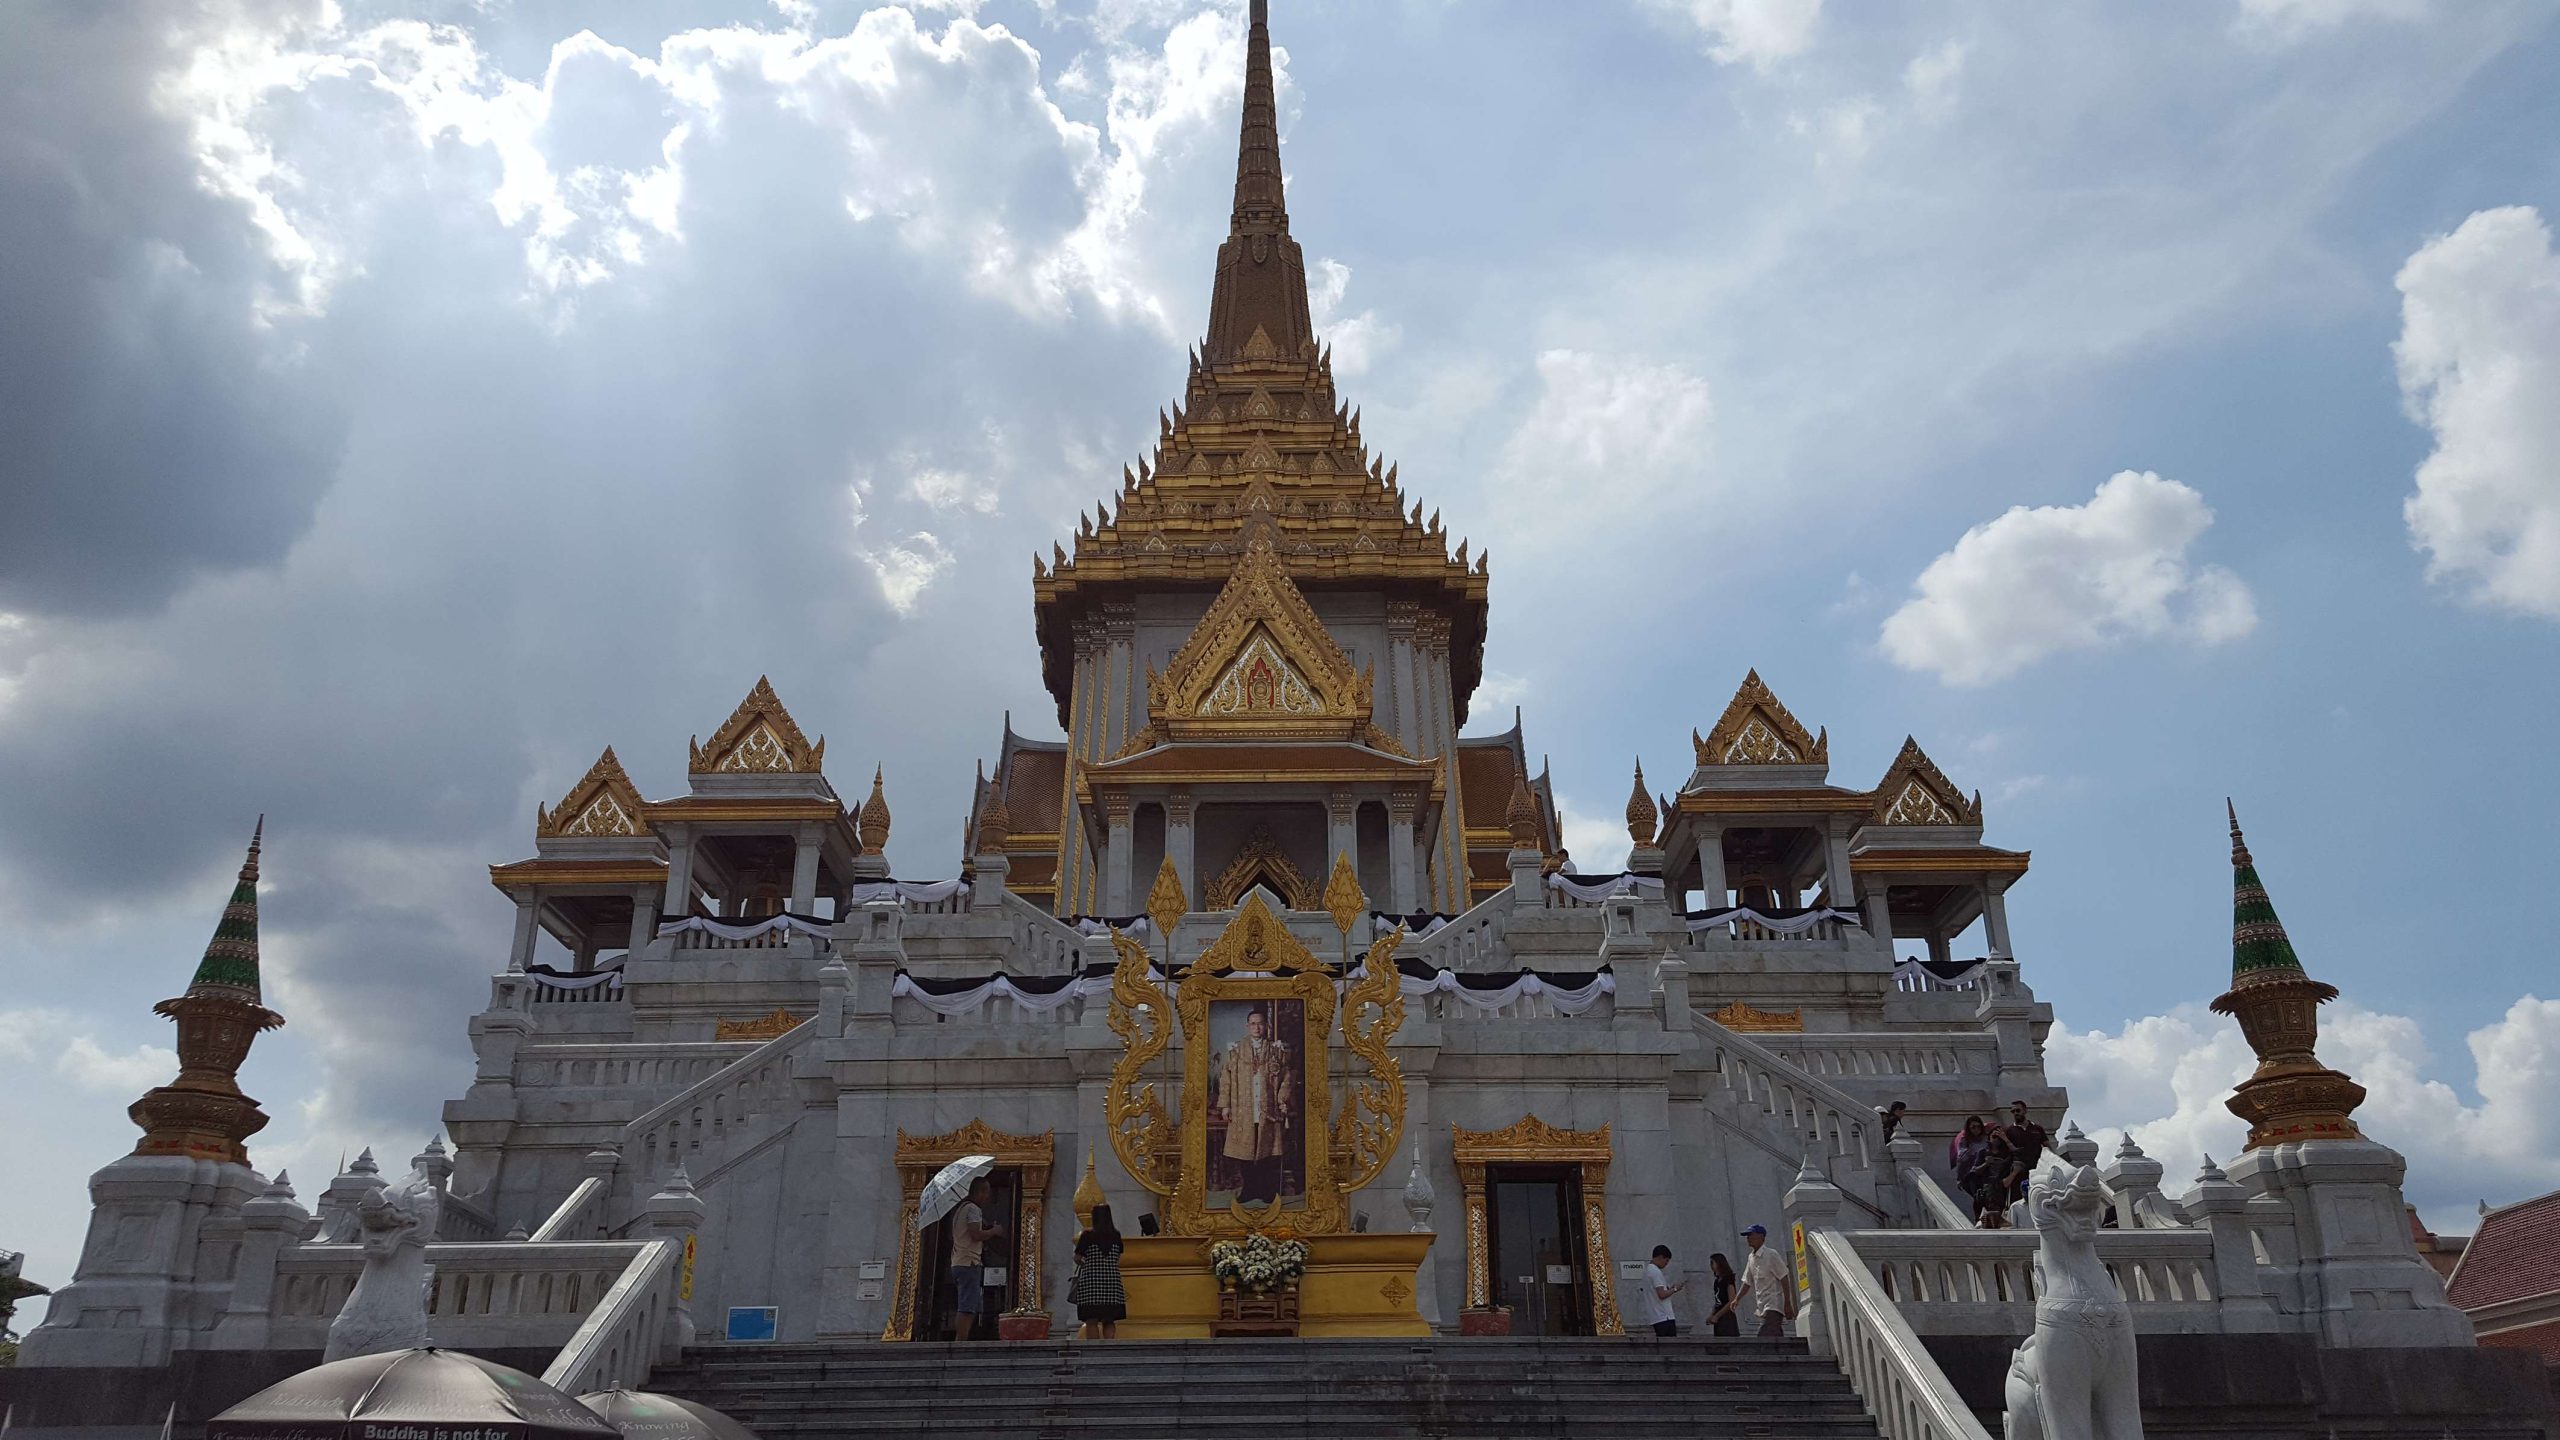 Wat Traimit. Kuil Buddha Emas